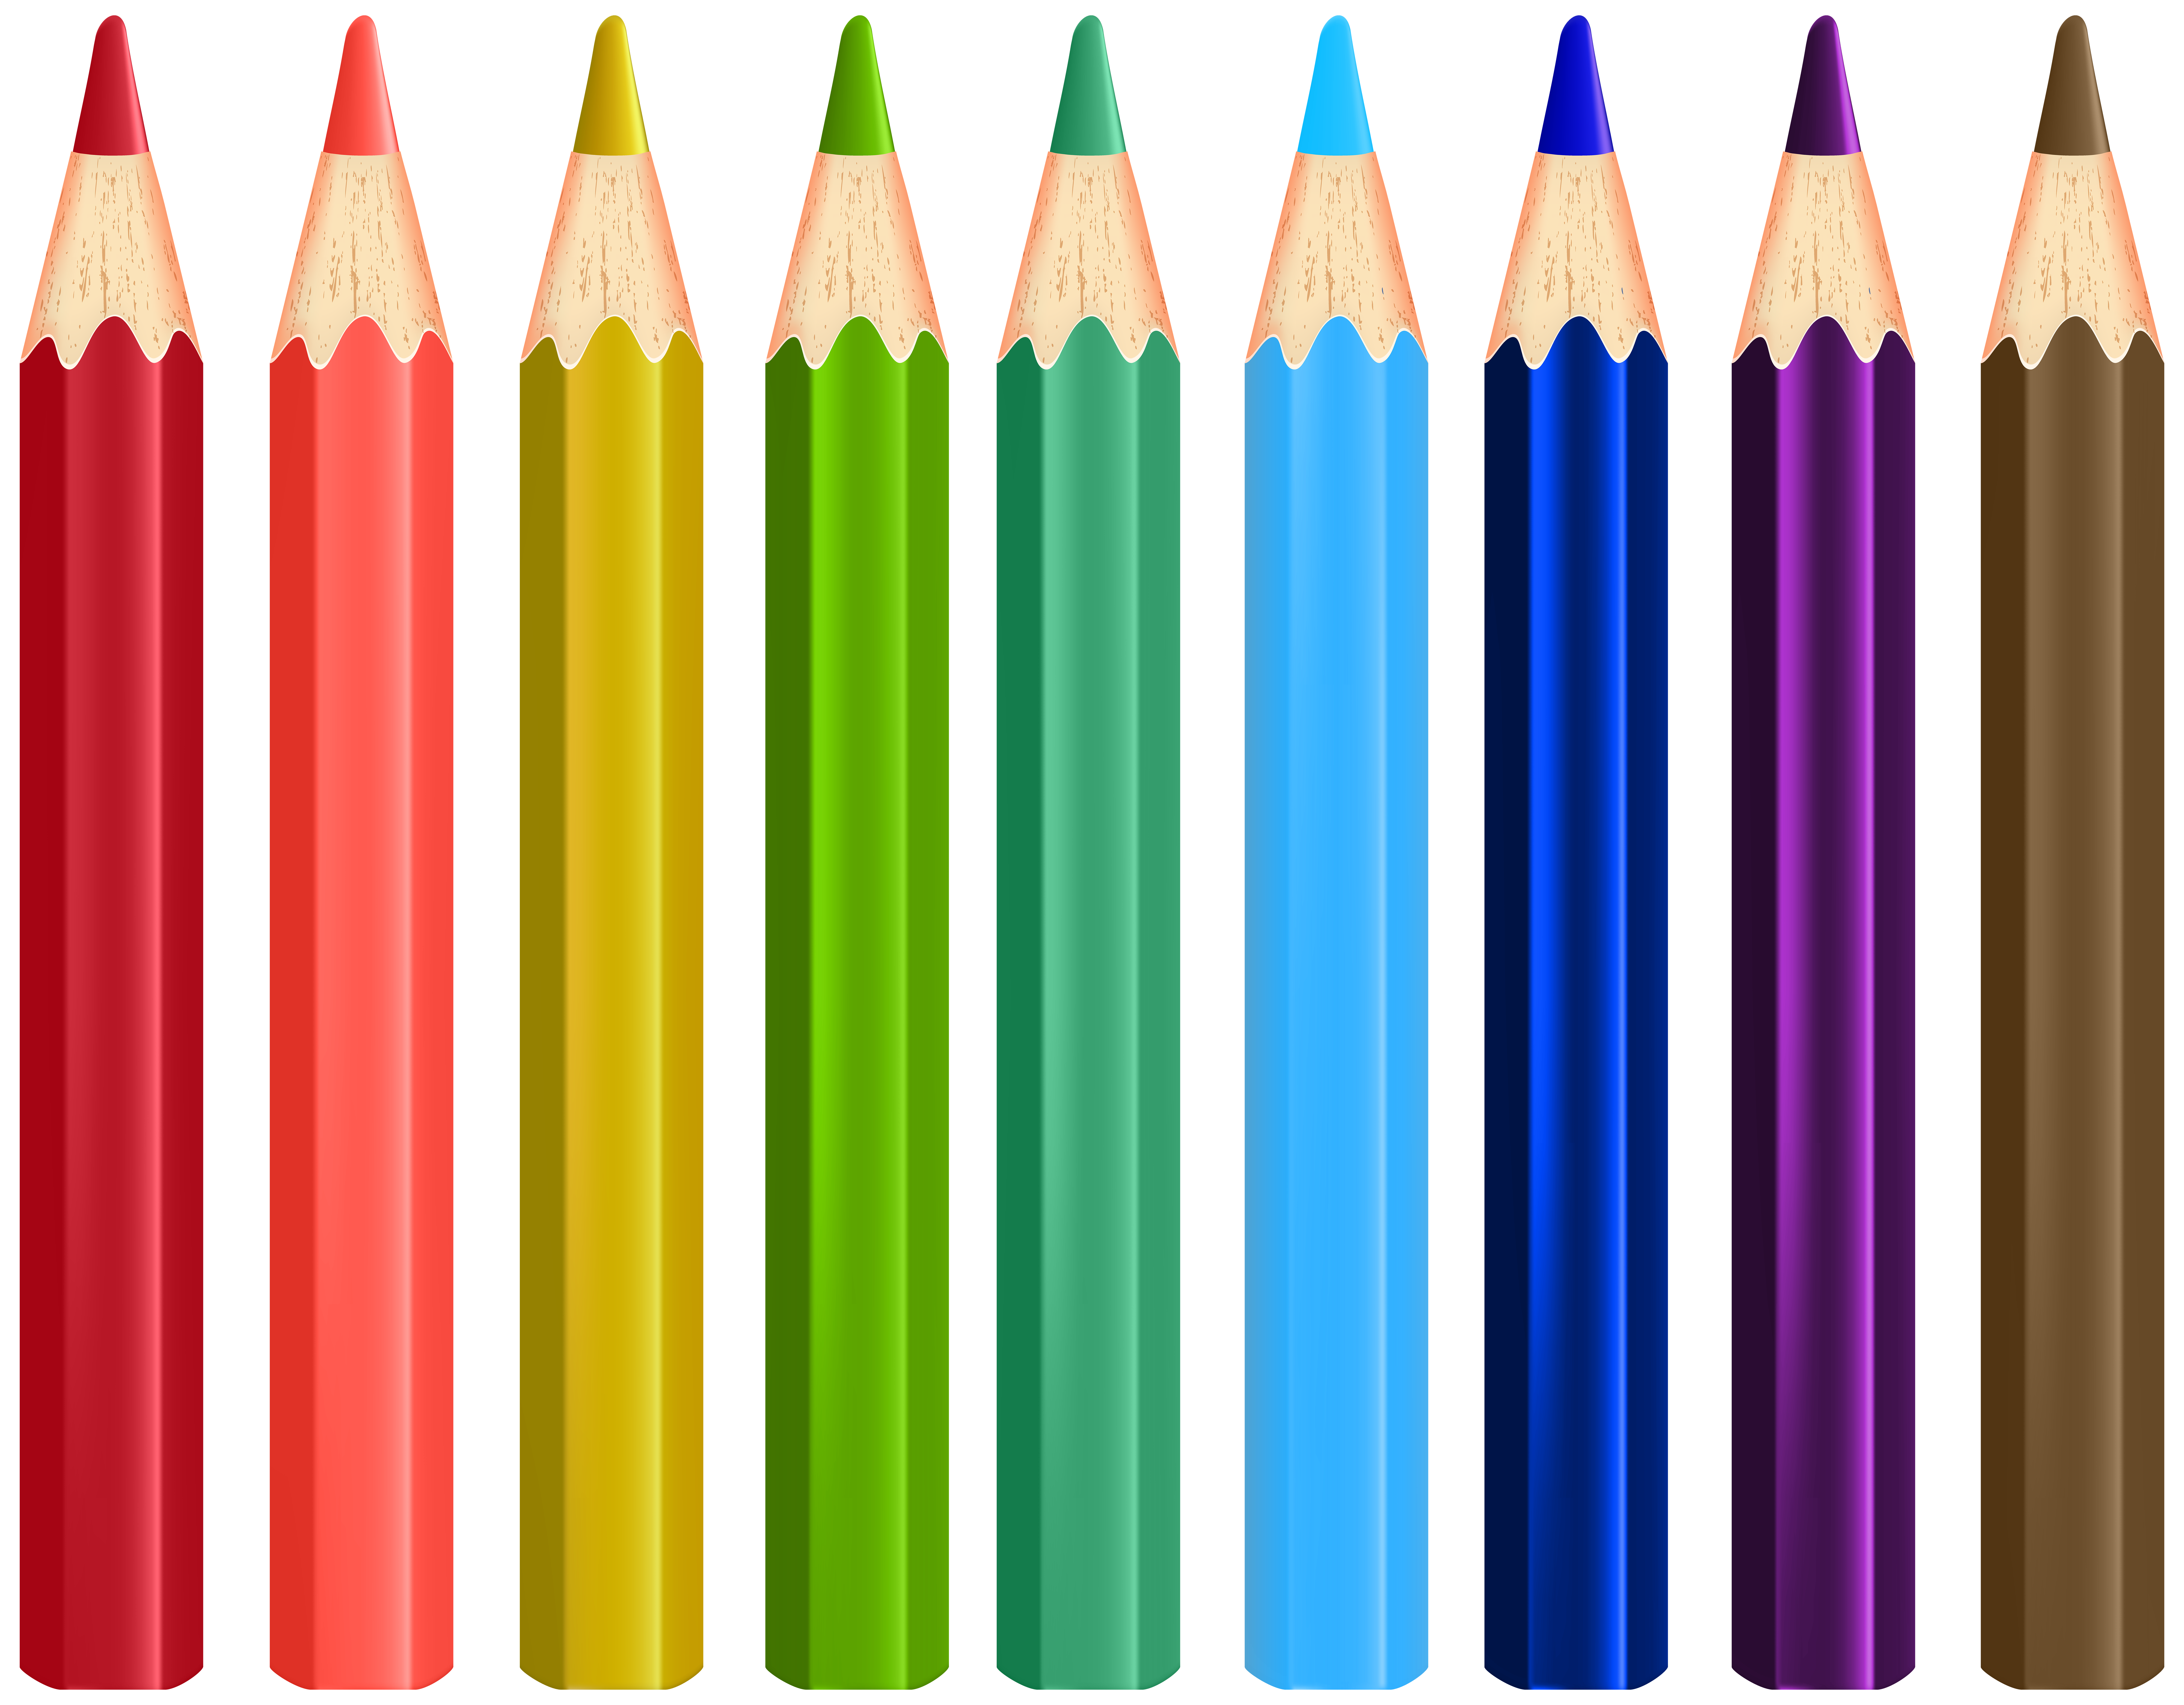 Ten pencils. Карандаши цветные. Карандаши разных цветов. Цветные карандаши для детей. Ребенок карандашом.